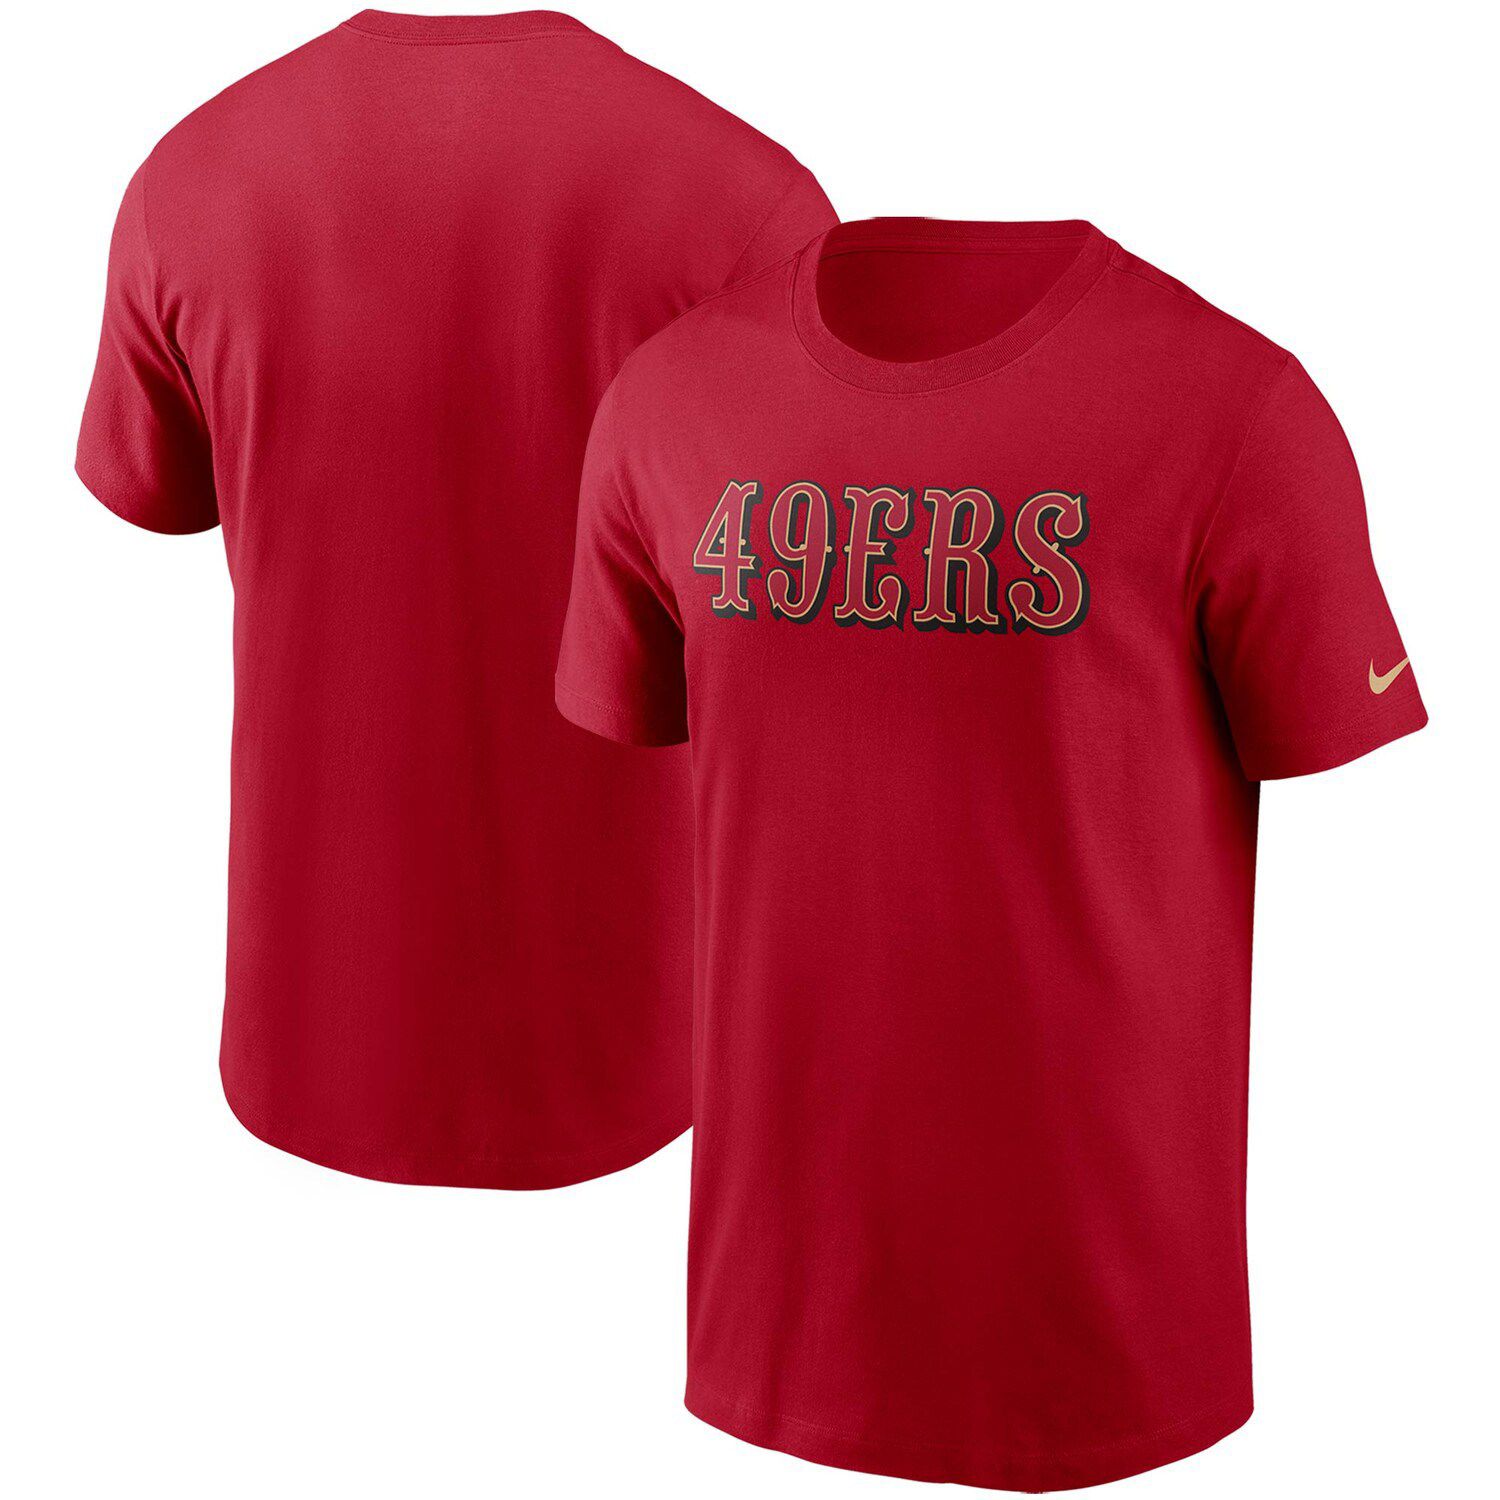 49ers shirt nike